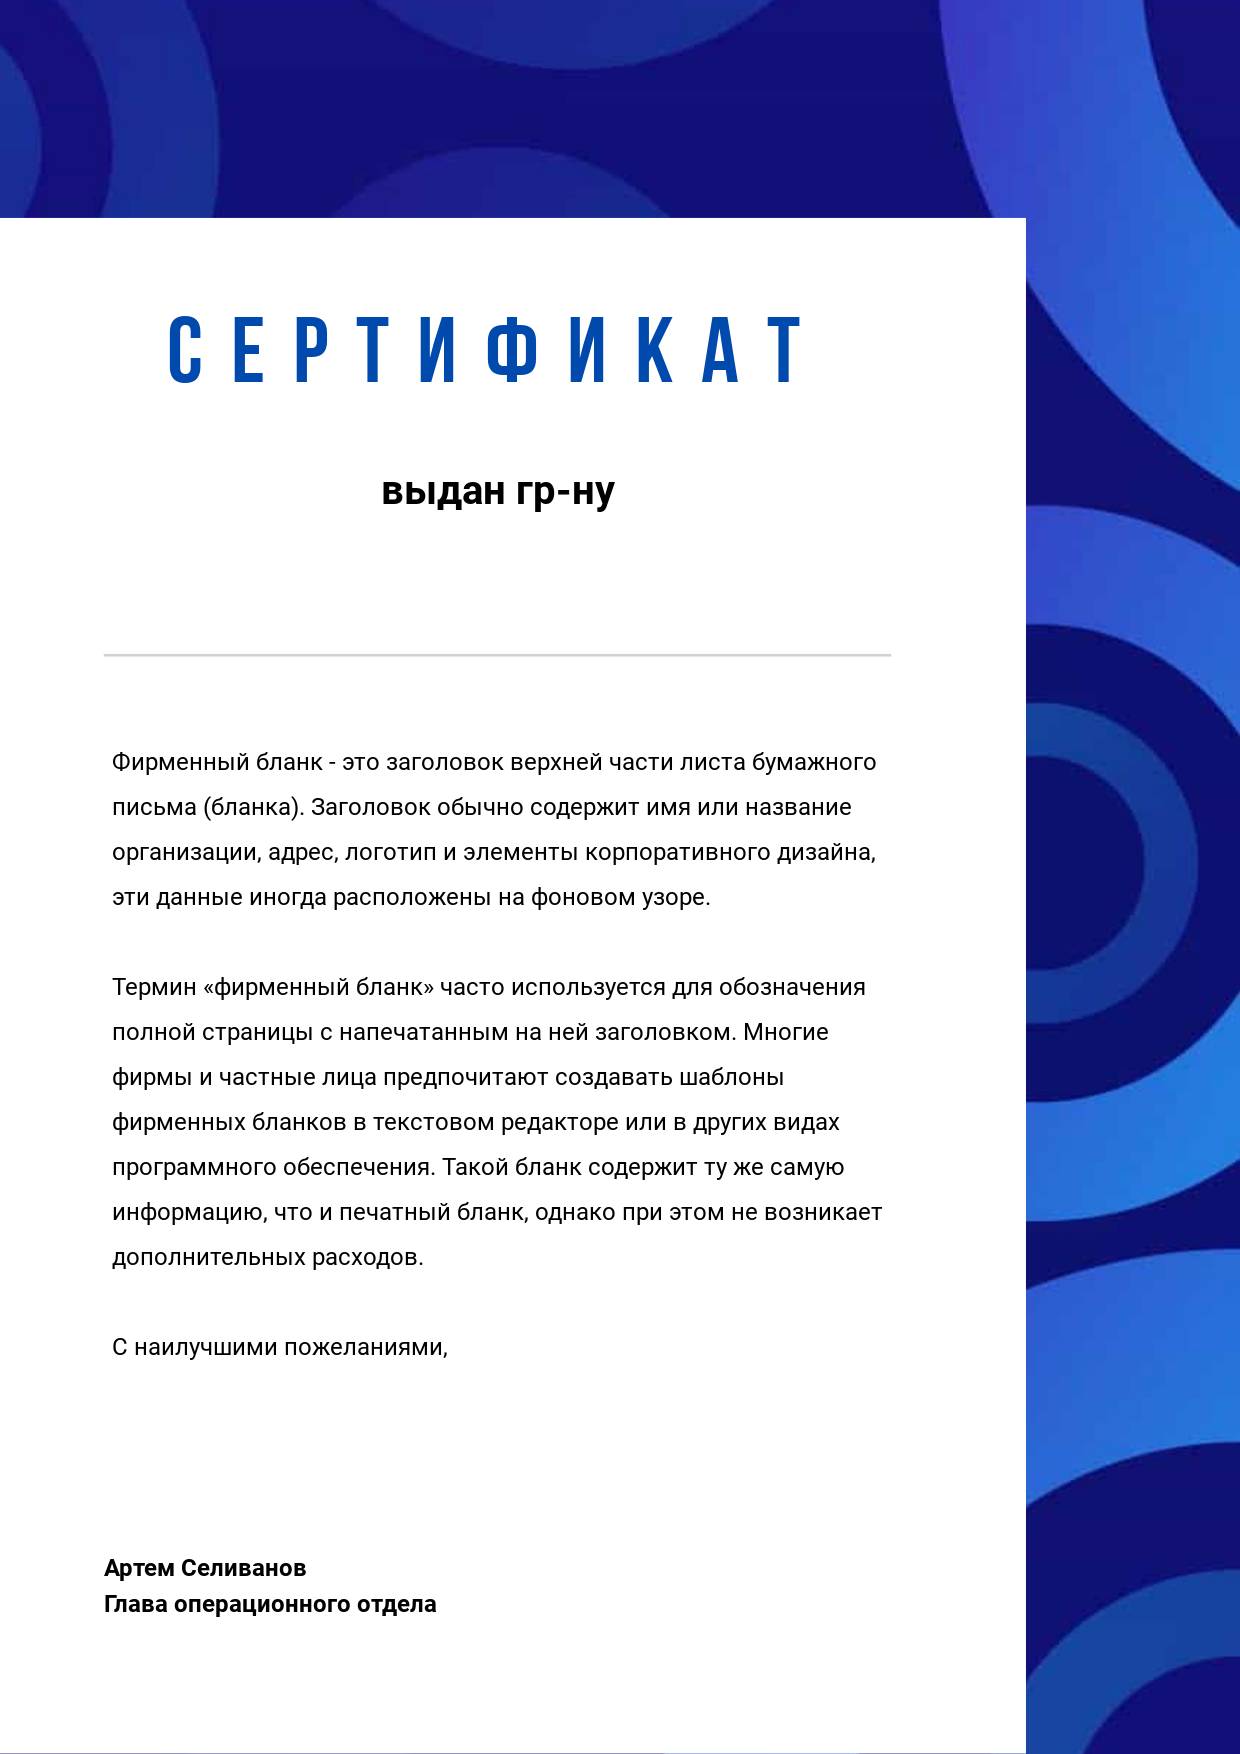 Ультрамариновый синий сертификат со светящимися кругами на фоне